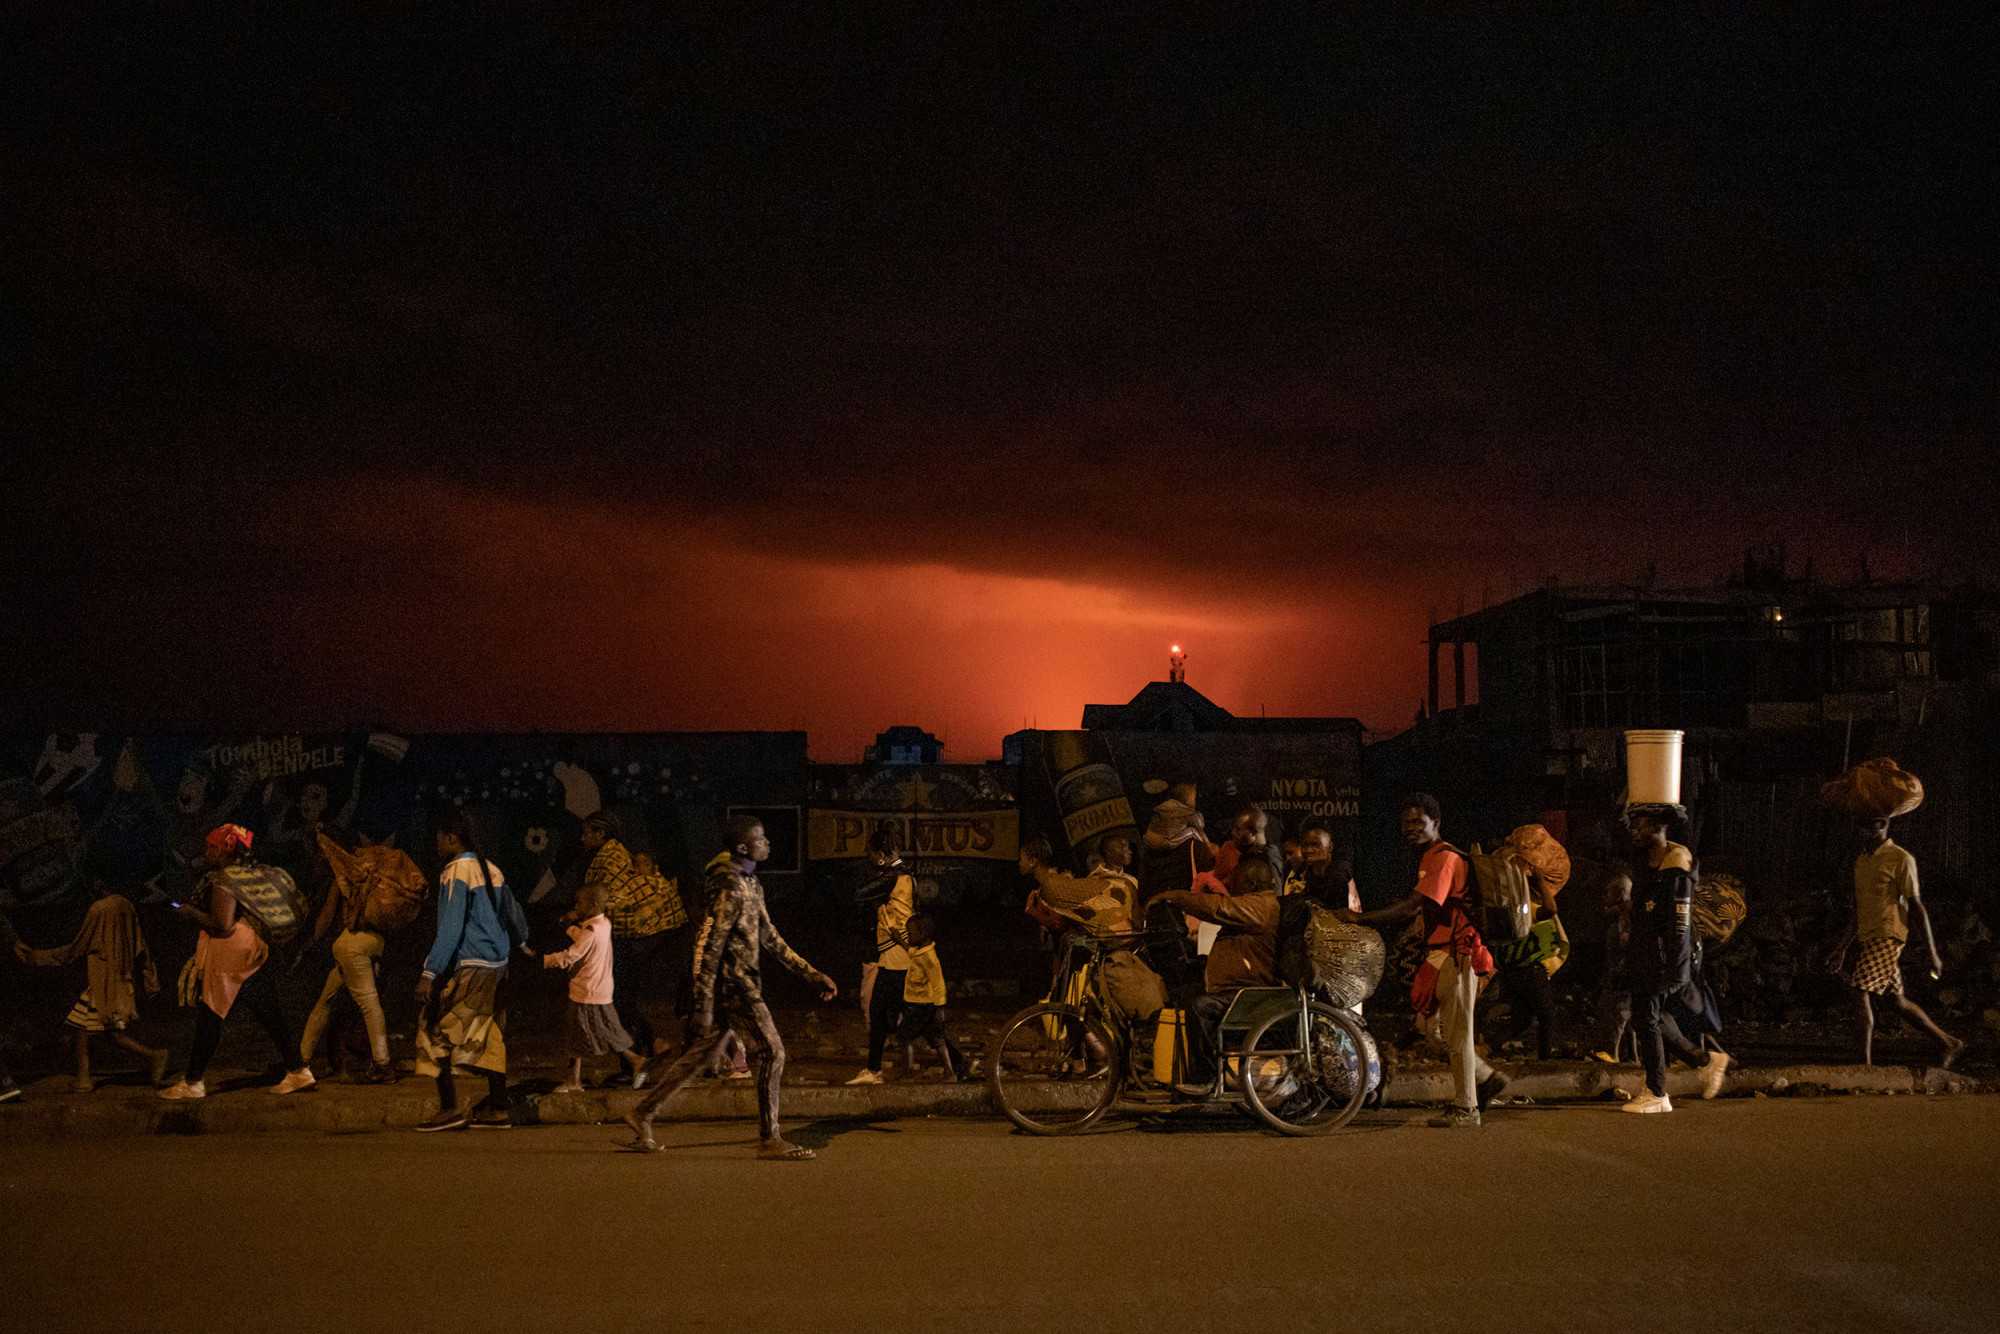 Goma, Nord-Kivu, 22 mai 2021. Dans la nuit, des habitants fuient l’éruption du Nyiragongo. © Finbarr O’Reilly pour la Fondation Carmignac 